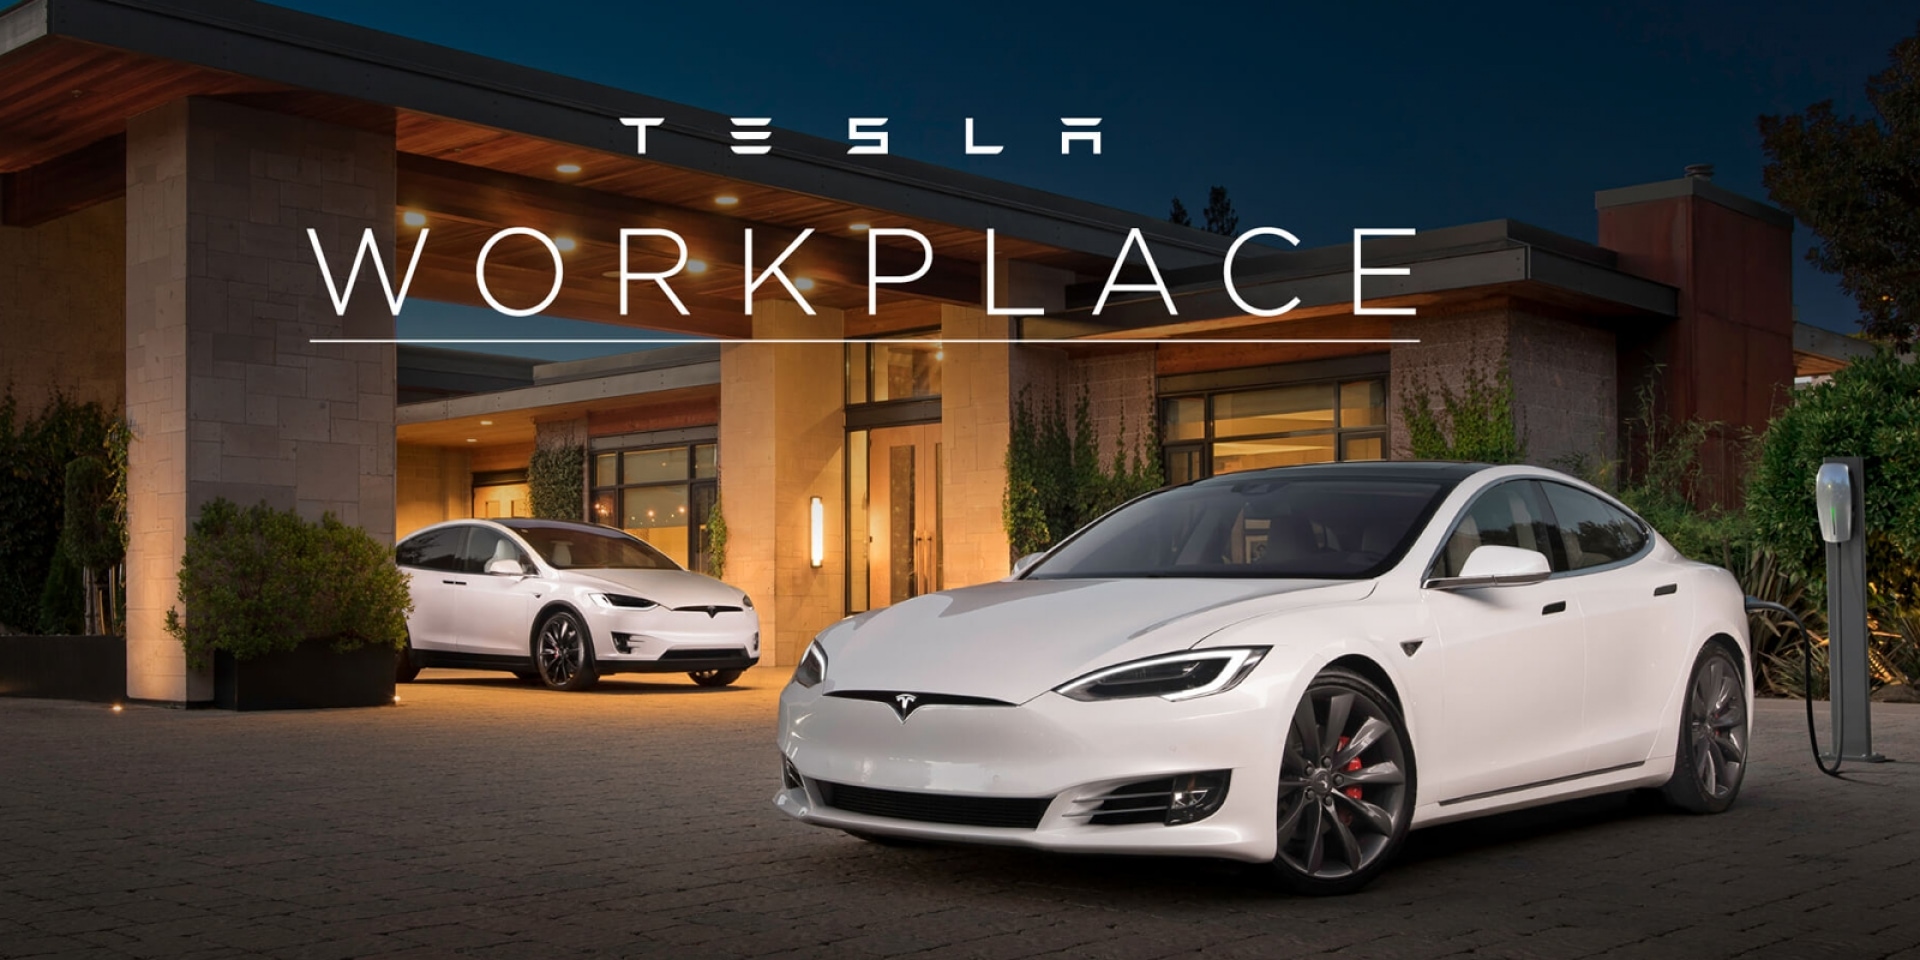 官方新聞稿。Tesla Workplace計畫拓展到台灣，加深民眾對電動車的認知和體驗